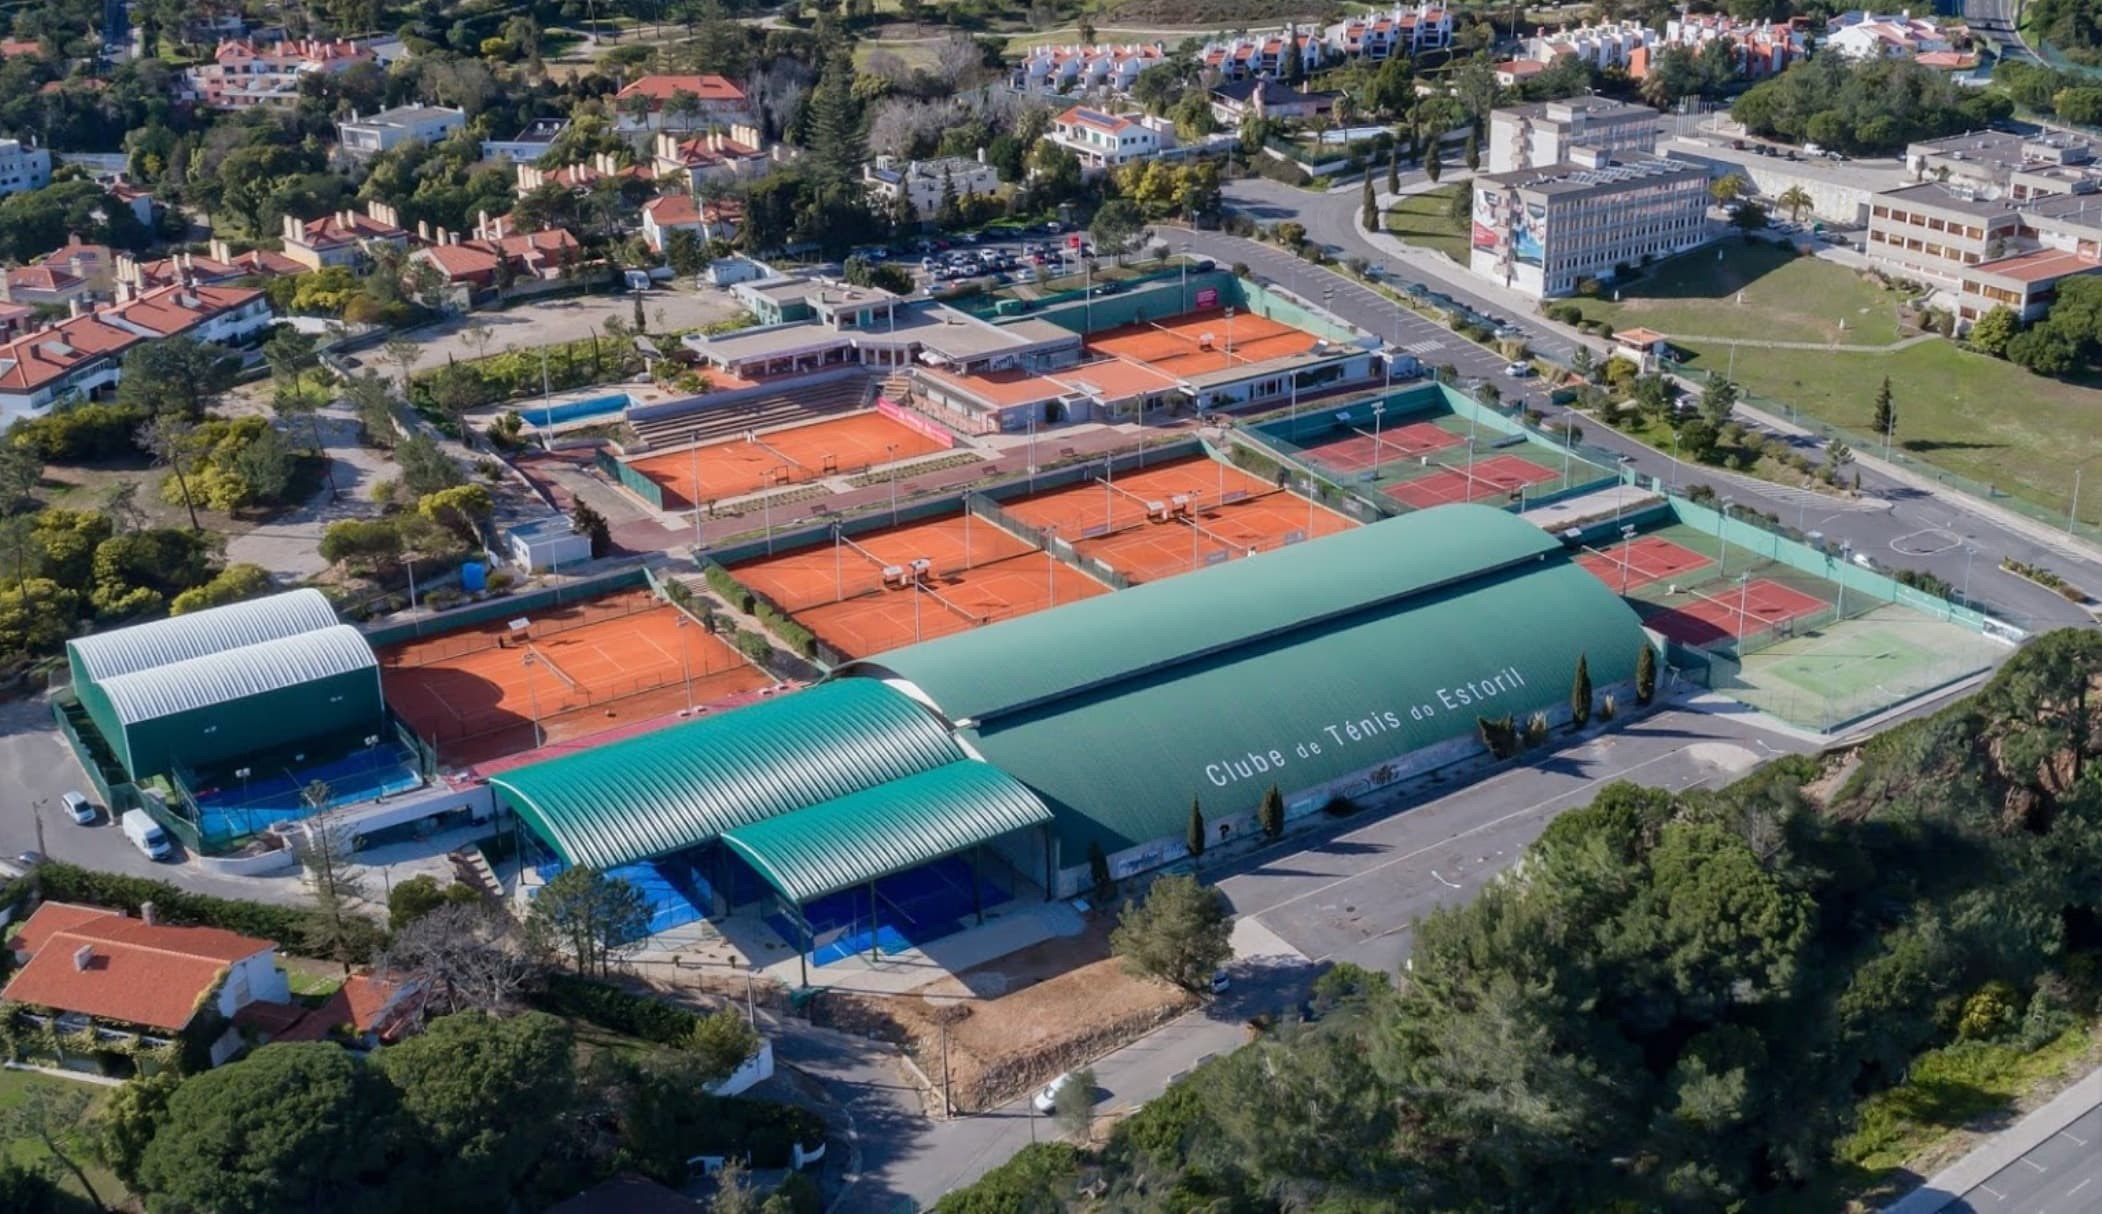 Estoril Tennis Club